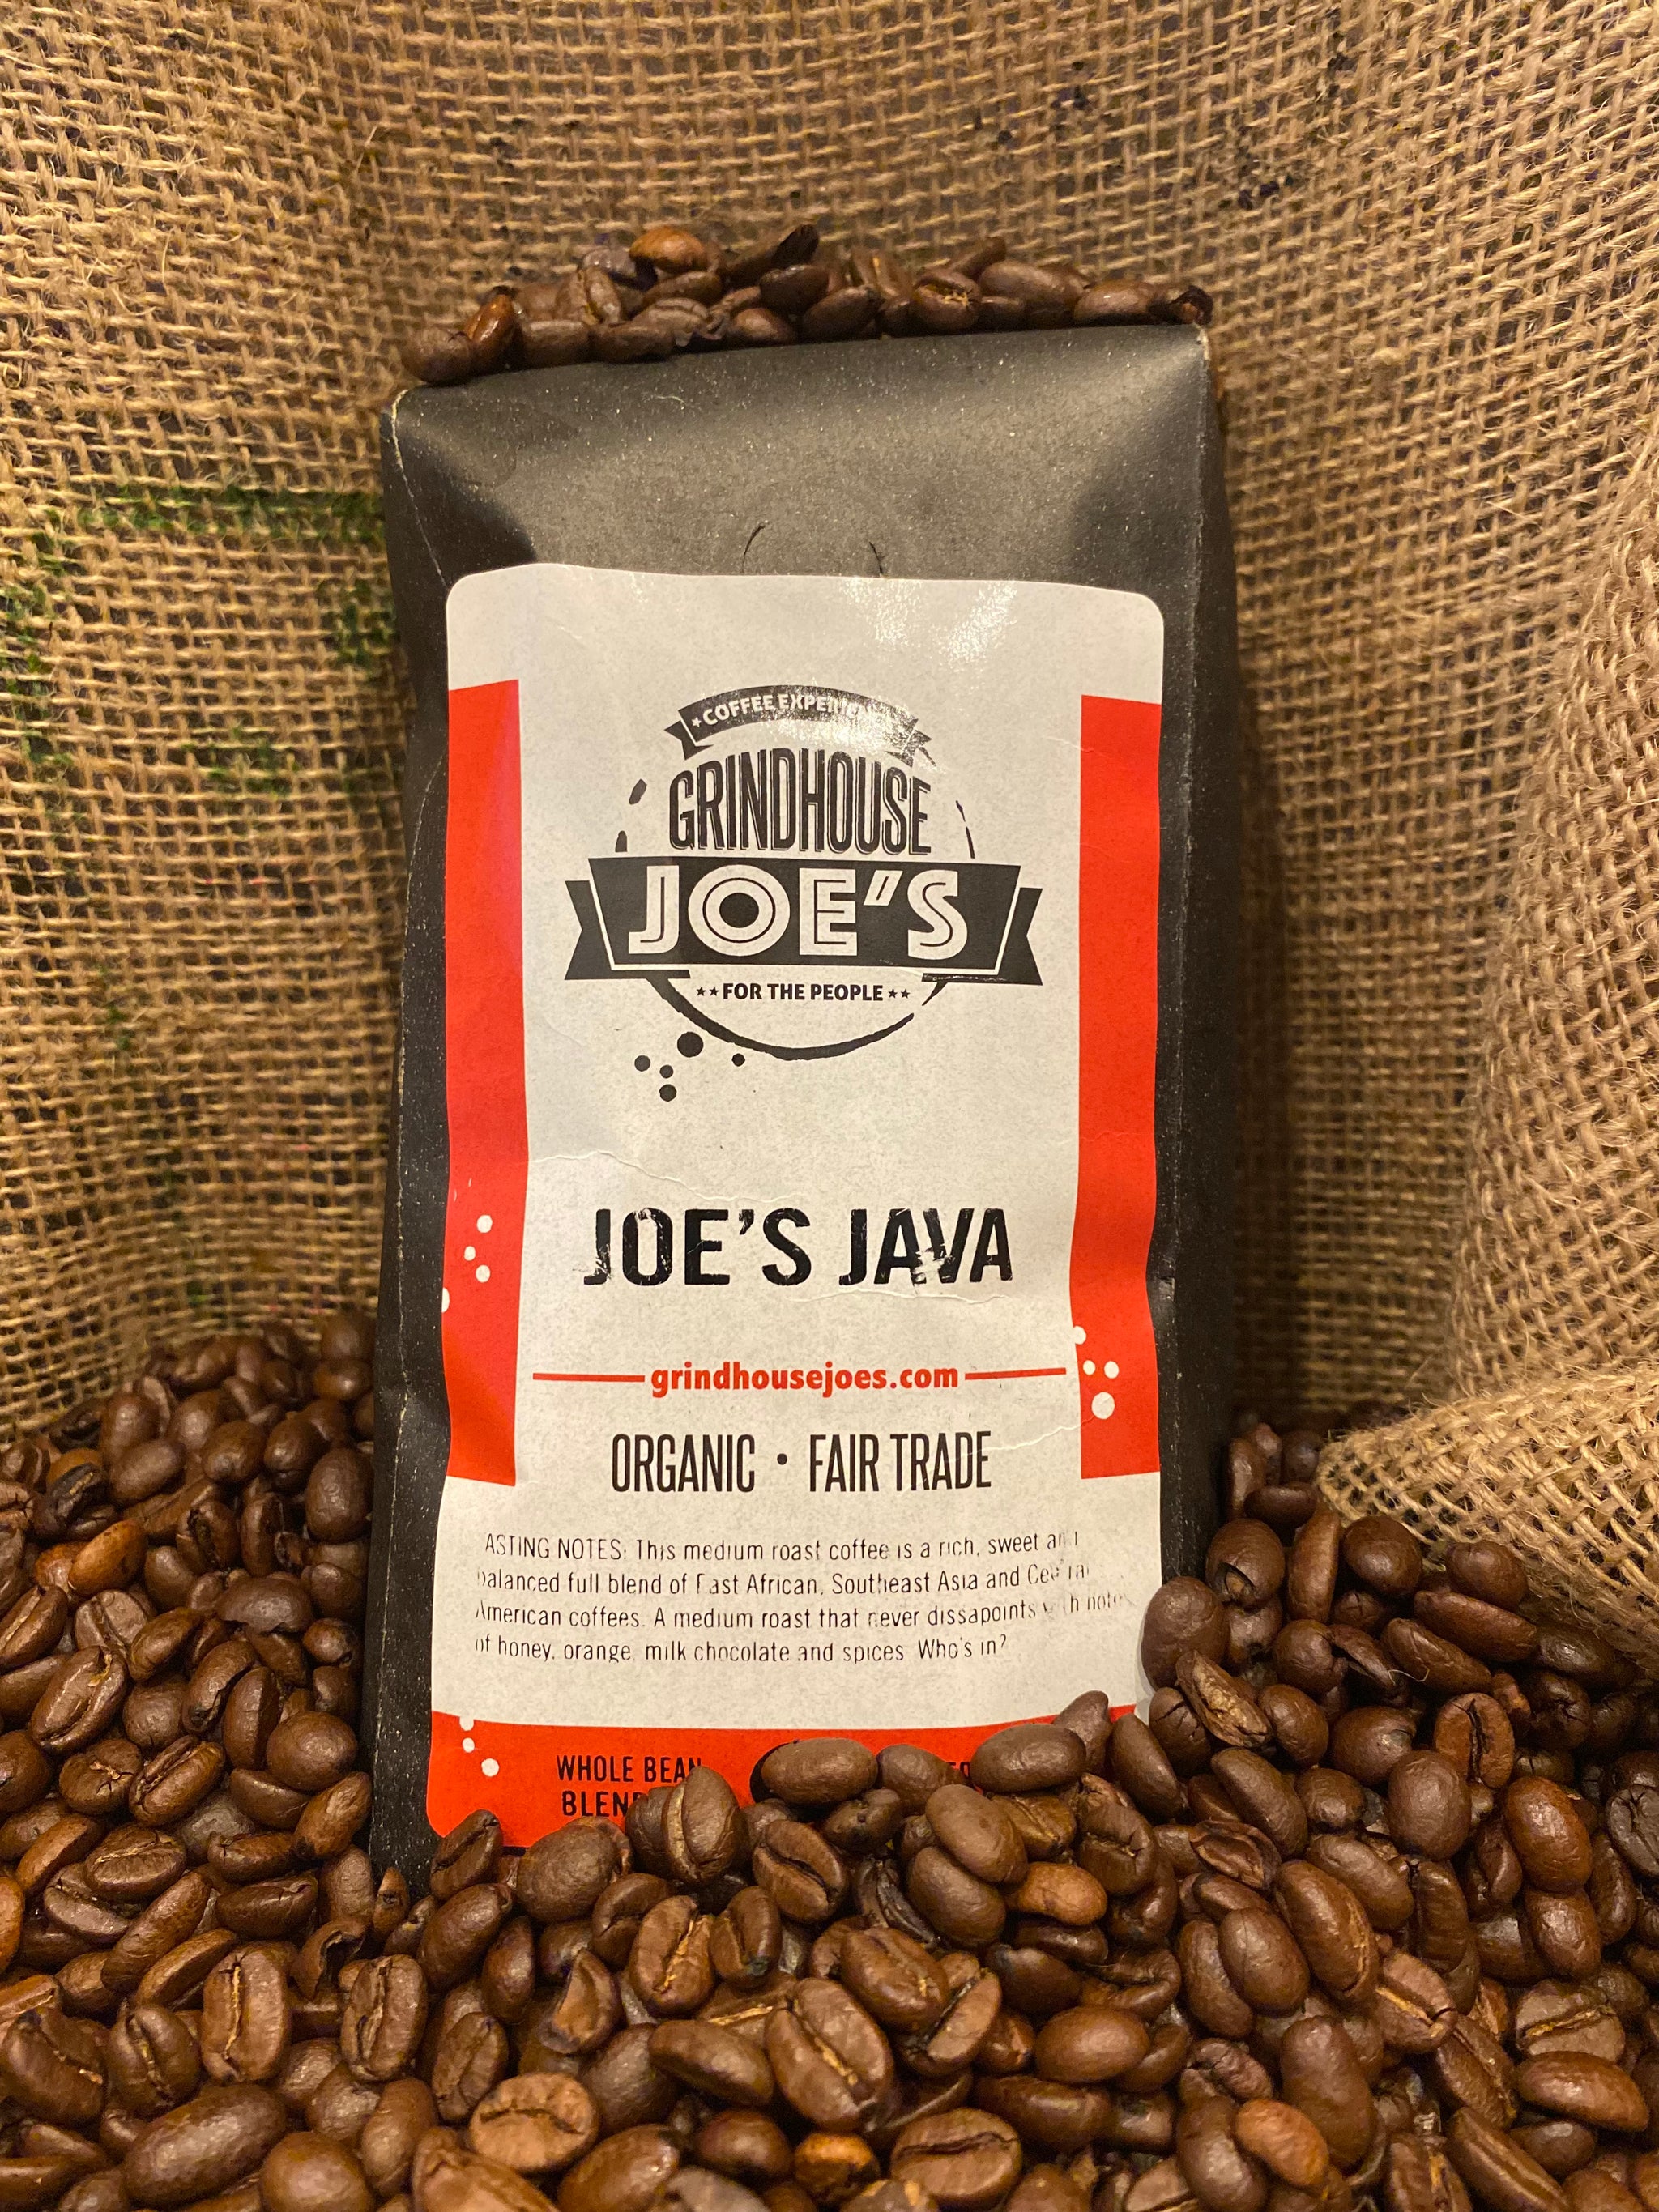 Joe's Java